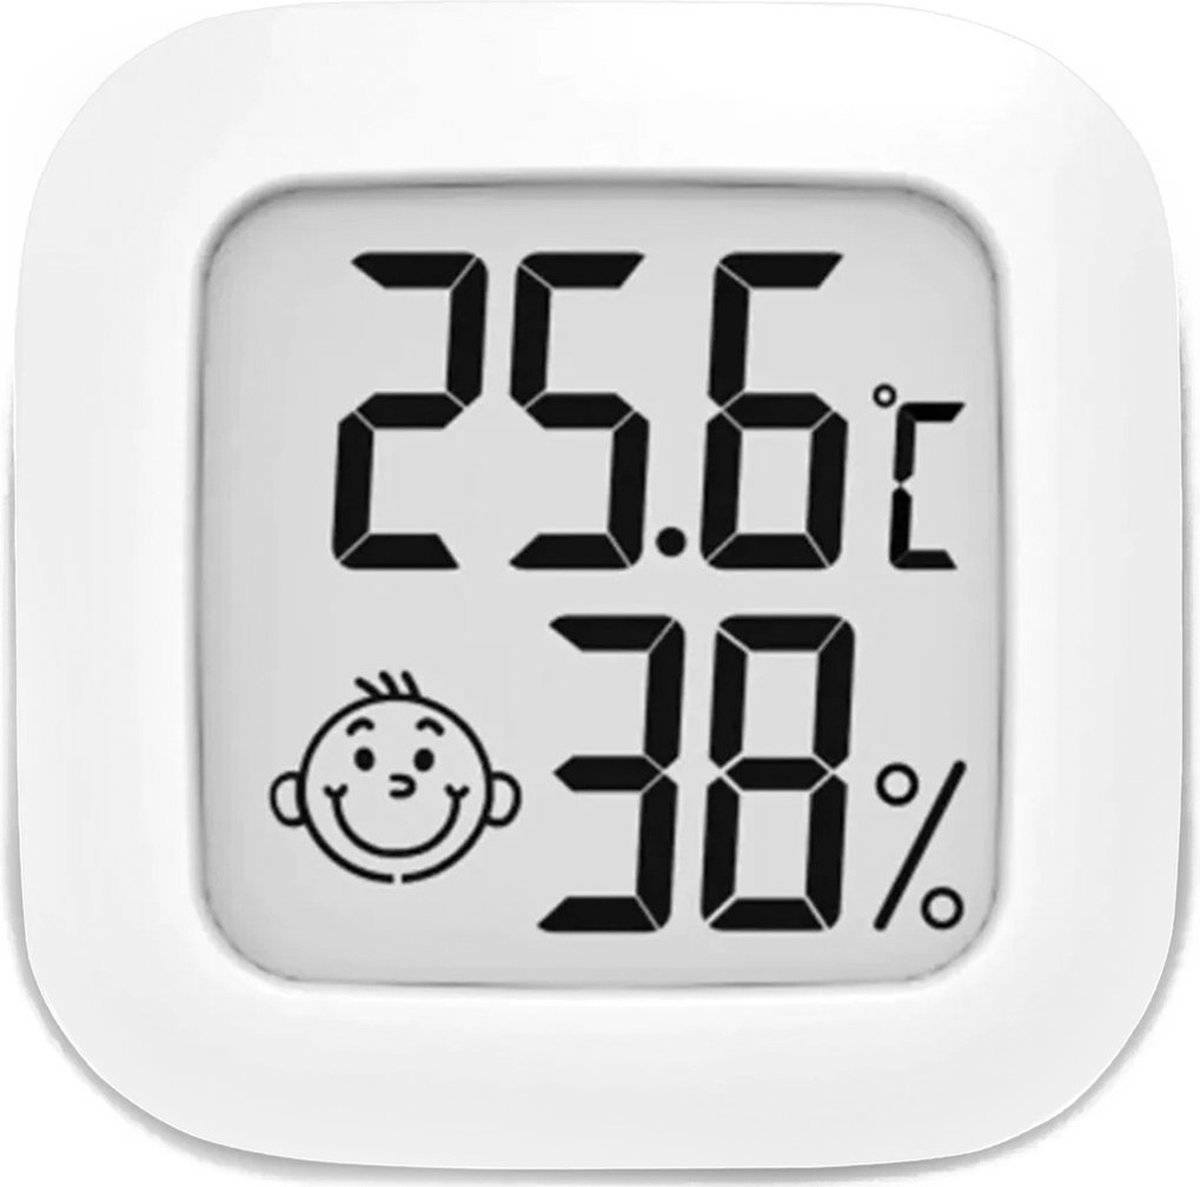 Hygrometer - Weerstation - Luchtvochtigheidsmeter - Thermometer Voor Binnen - Incl. Batterij en Plakstrip - Merkloos